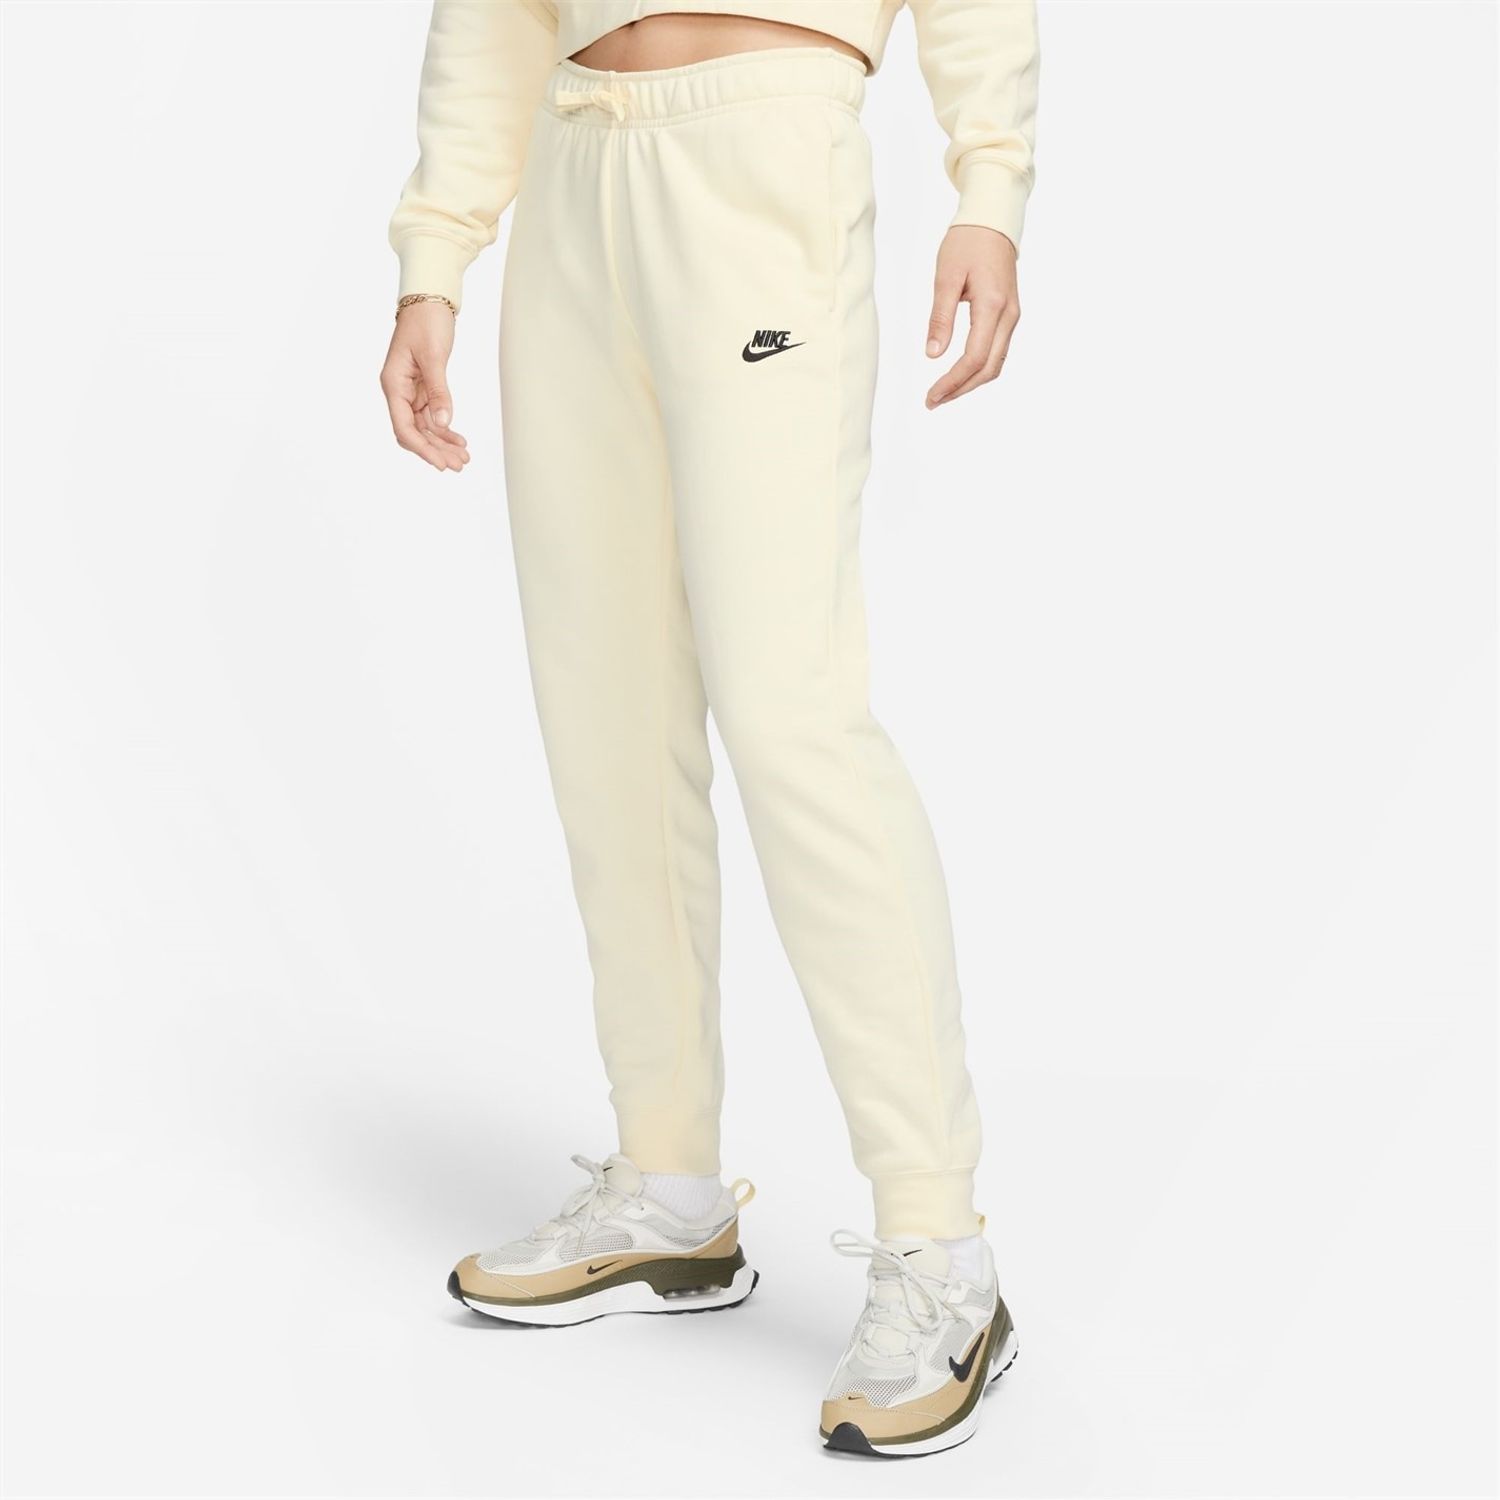 Nike Sportswear Essential Collection Women's Fleece Pants.